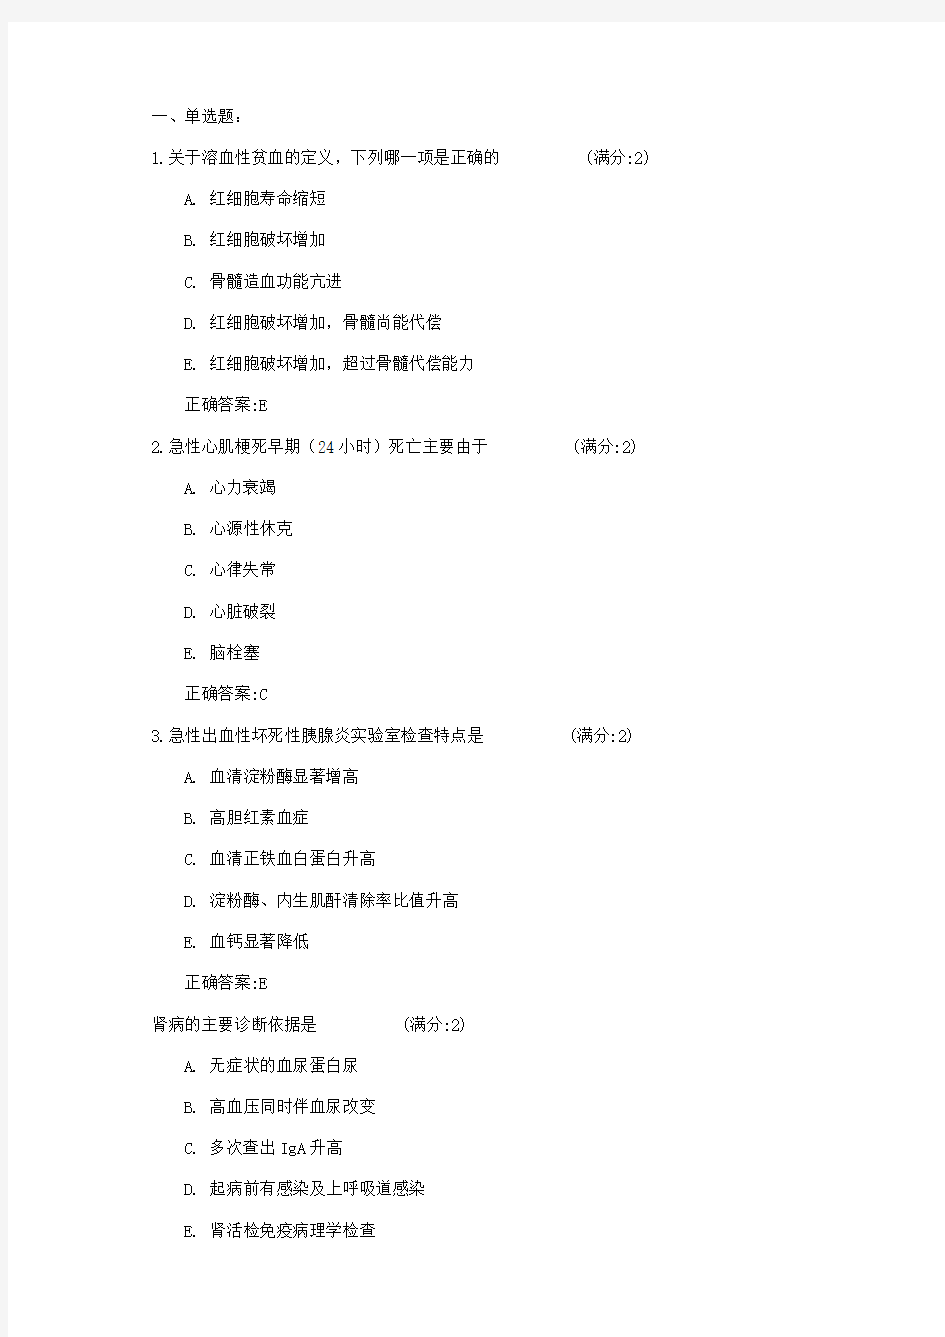 中国医科大学16春《内科学》在线作业100分答案[1]